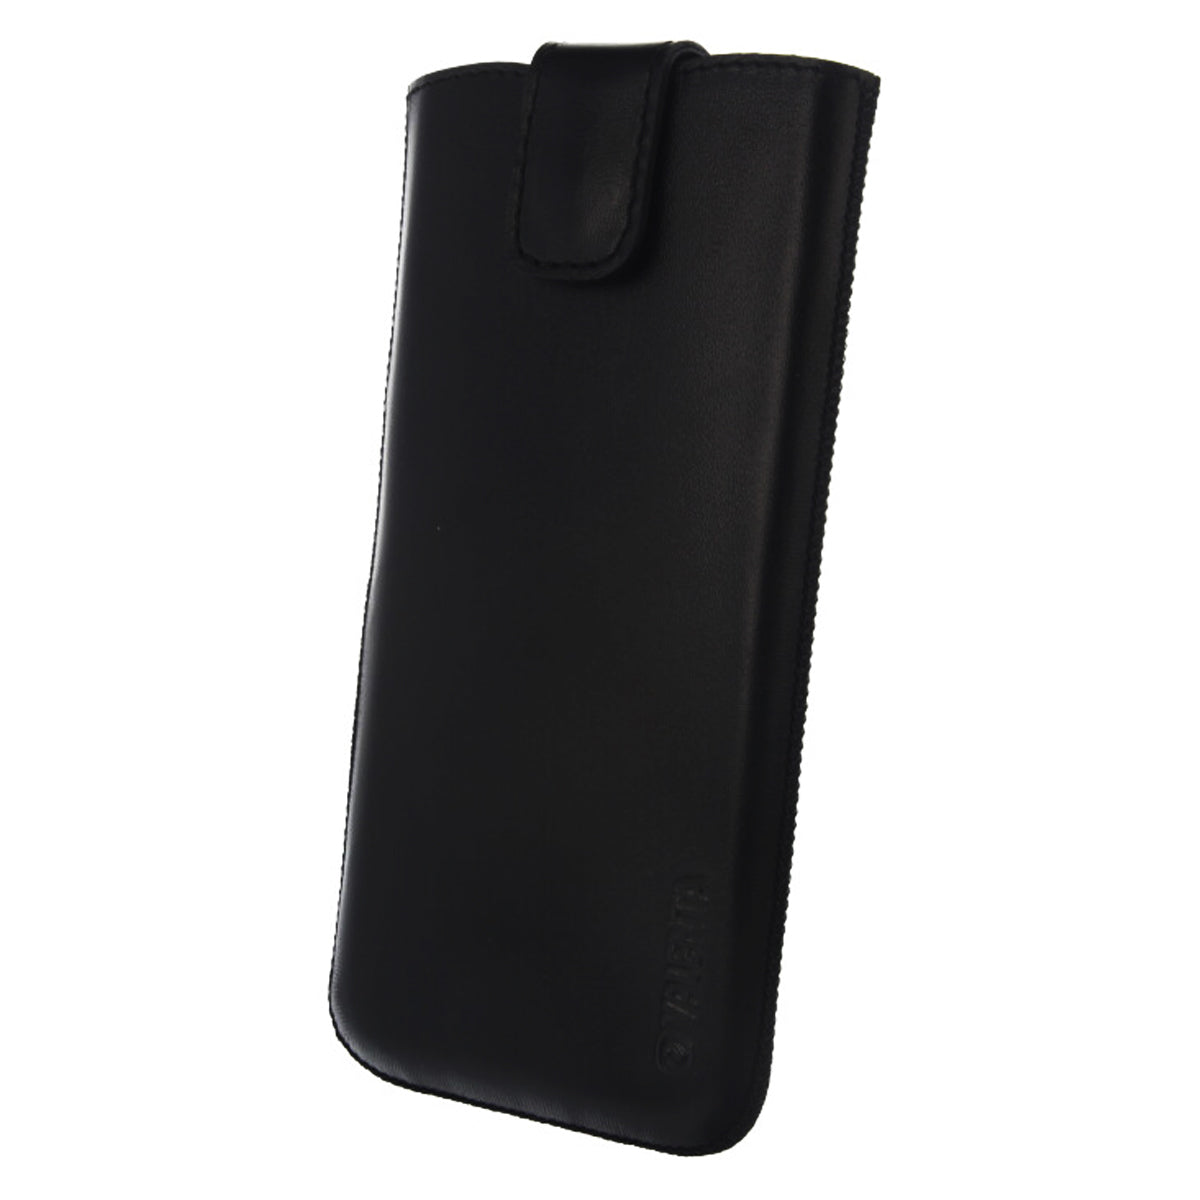 Pocket UNI Zwart Small - H160 x B71 x D9